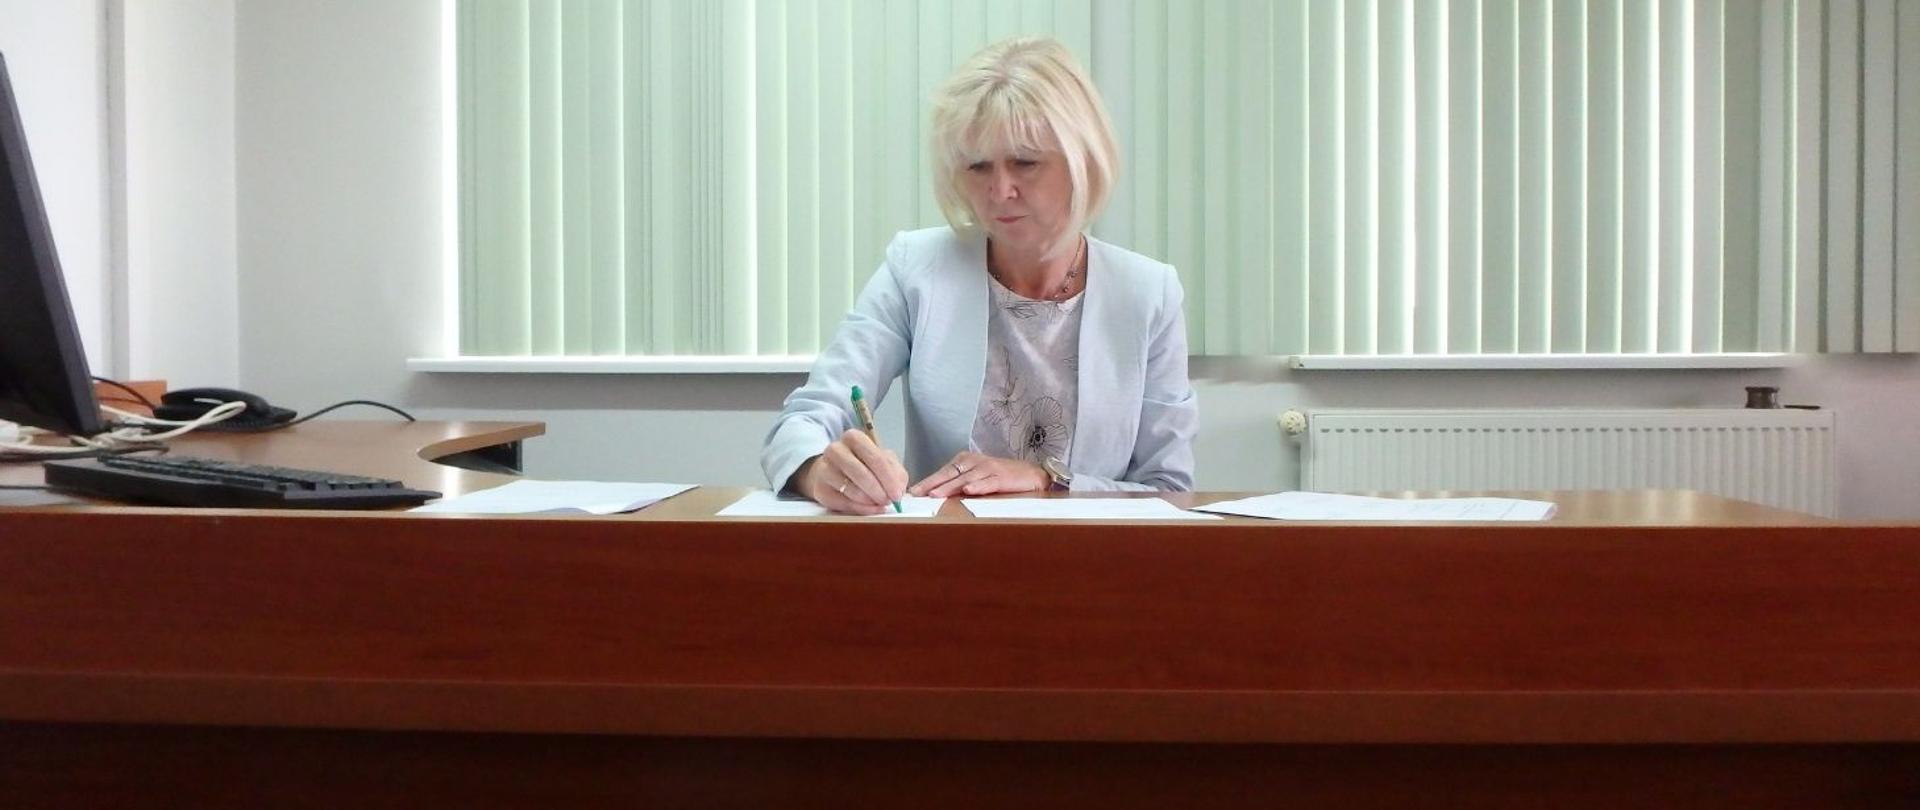 Regionalny Dyrektor Ochrony Środowiska w Olsztynie. Kobieta siedzi przy biurku, na którym leżą kartki. W ręku trzyma długopis.